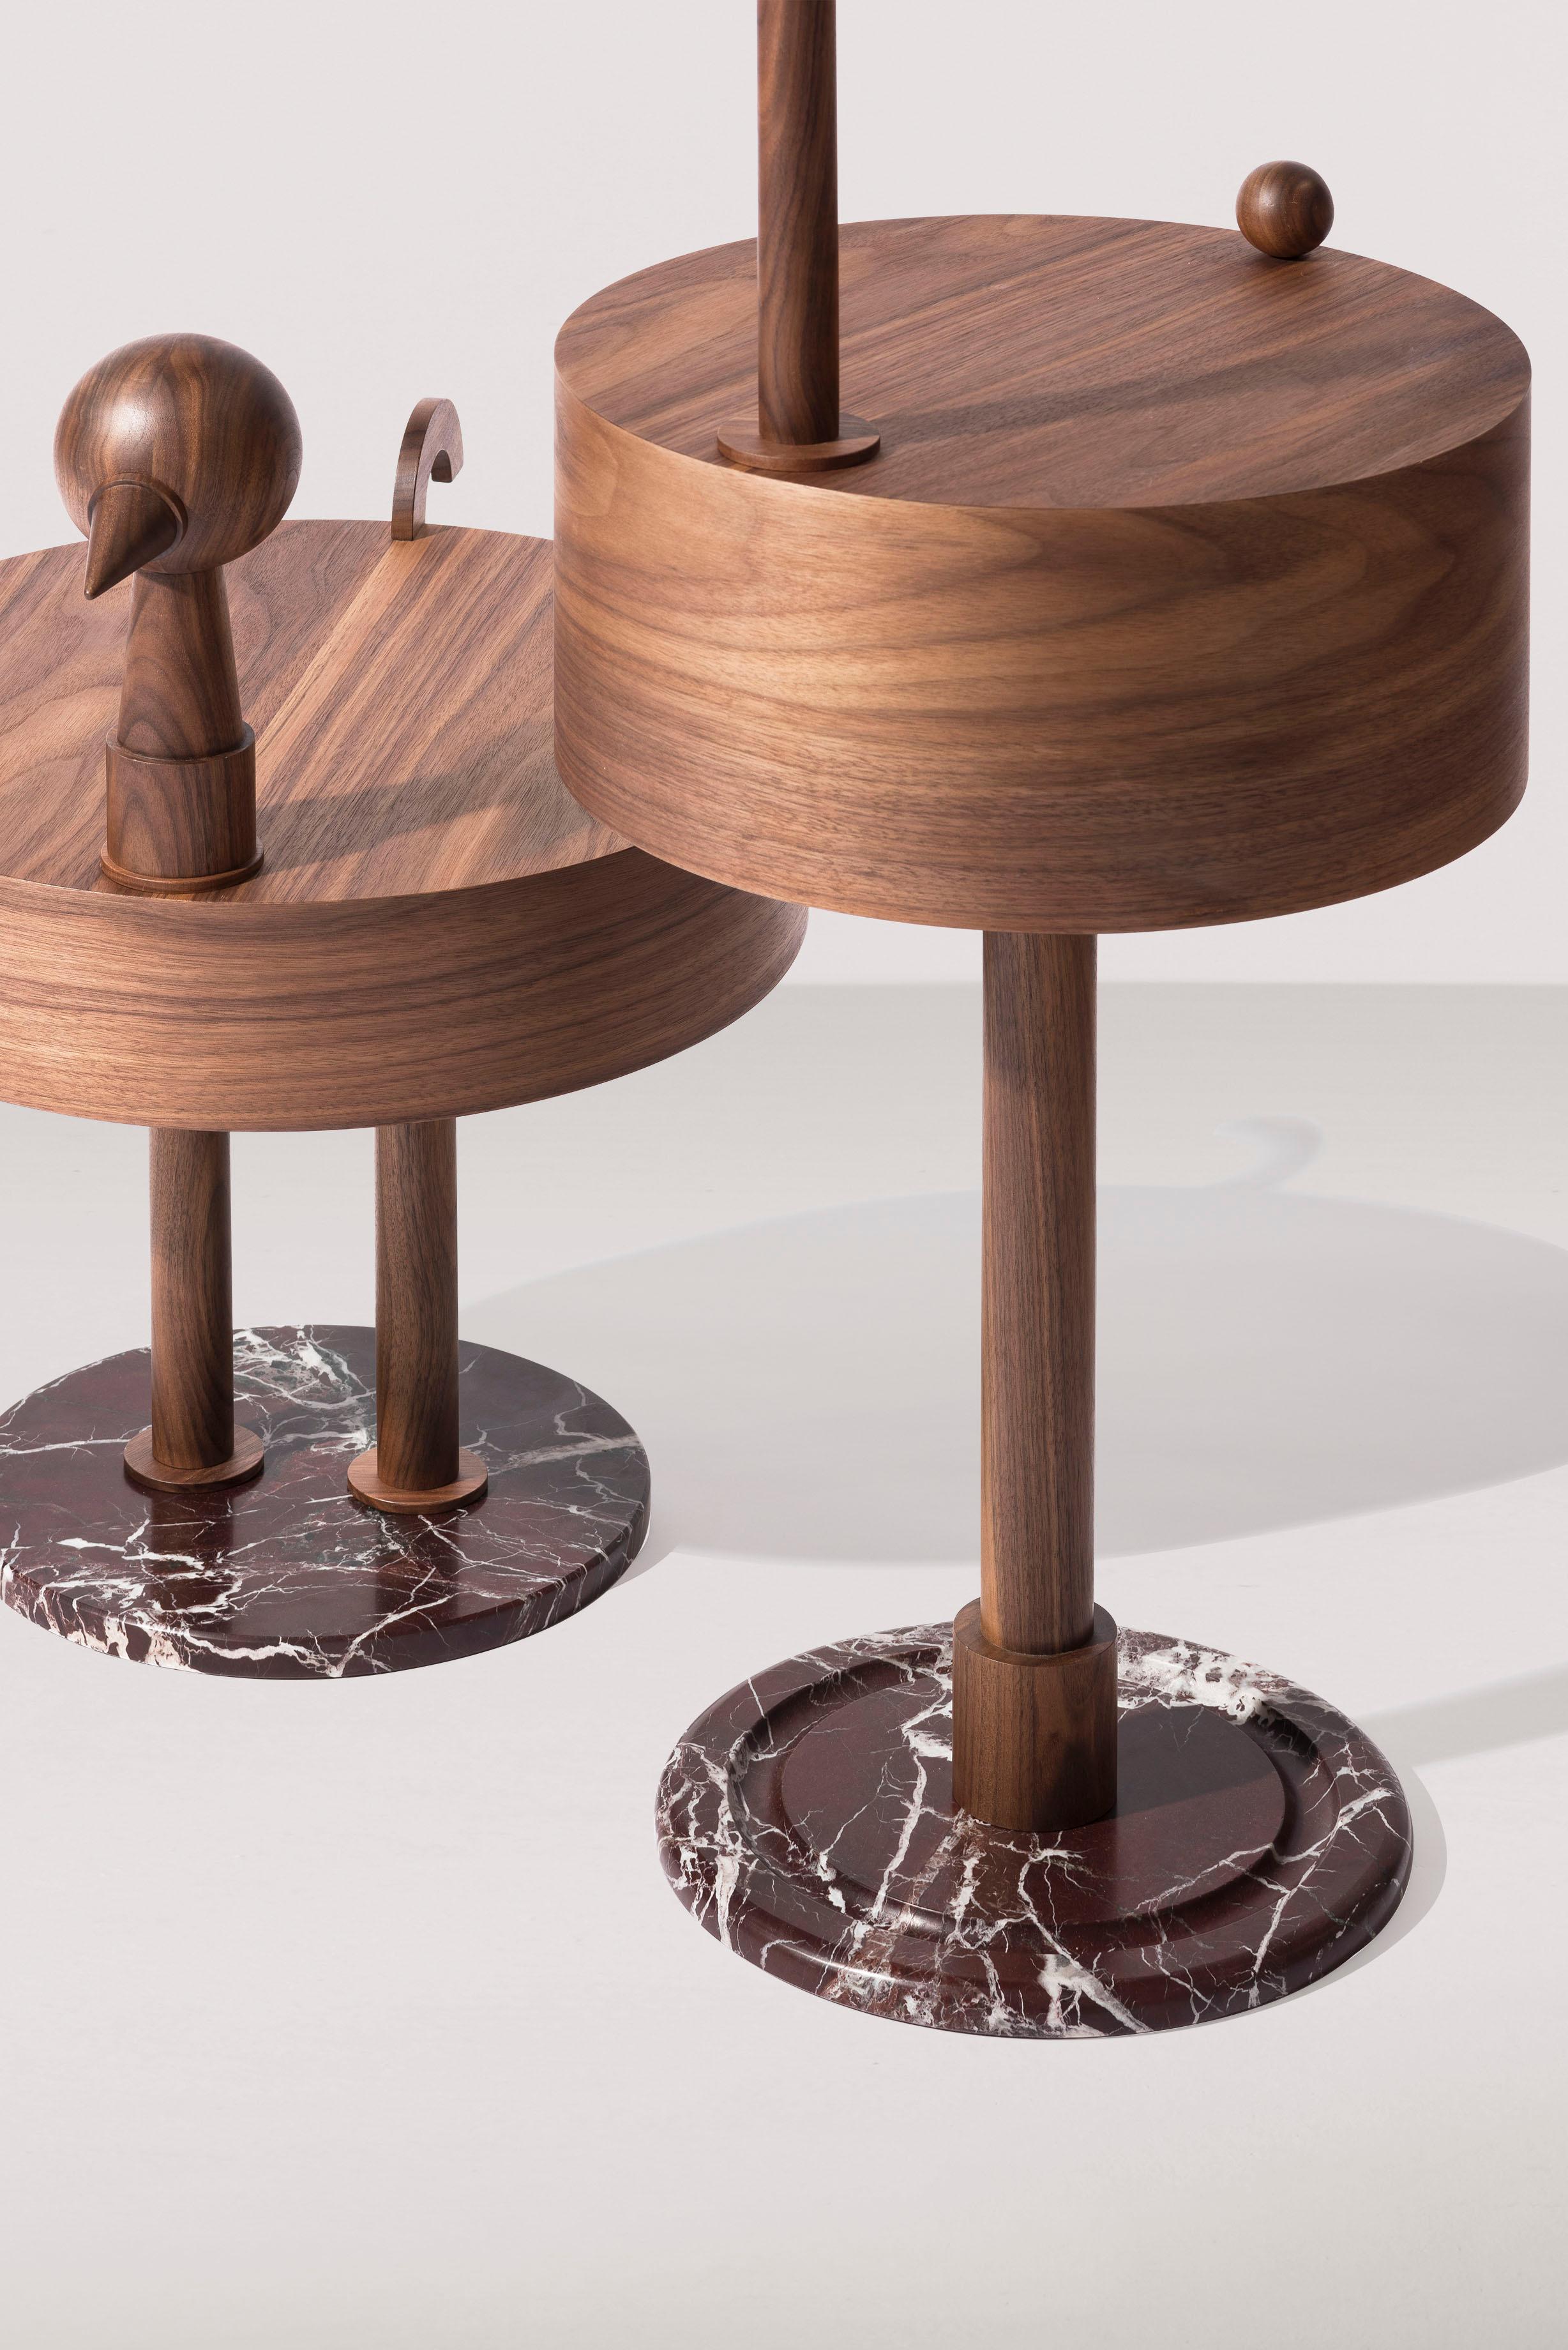 Nomon Rara Avis Side Tables by Mermelada Estudio For Sale 2